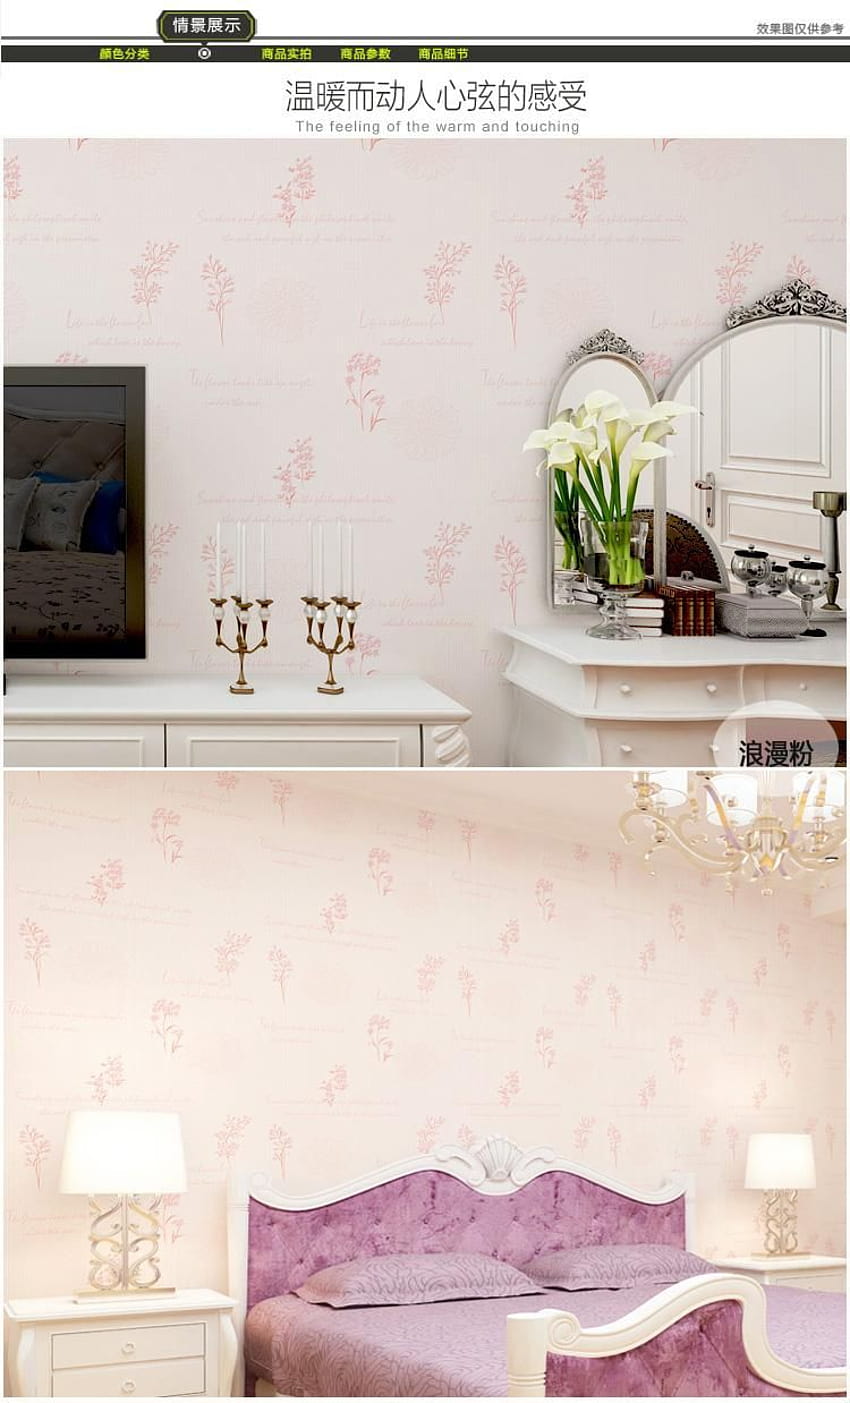 Chenqiyi からの新しい韓国の牧歌的な花ピンクの新鮮なロマンチックな暖かい 3 次元の不織布の寝室のリビングルームのテレビの背景の家の, $9.05 HD電話の壁紙